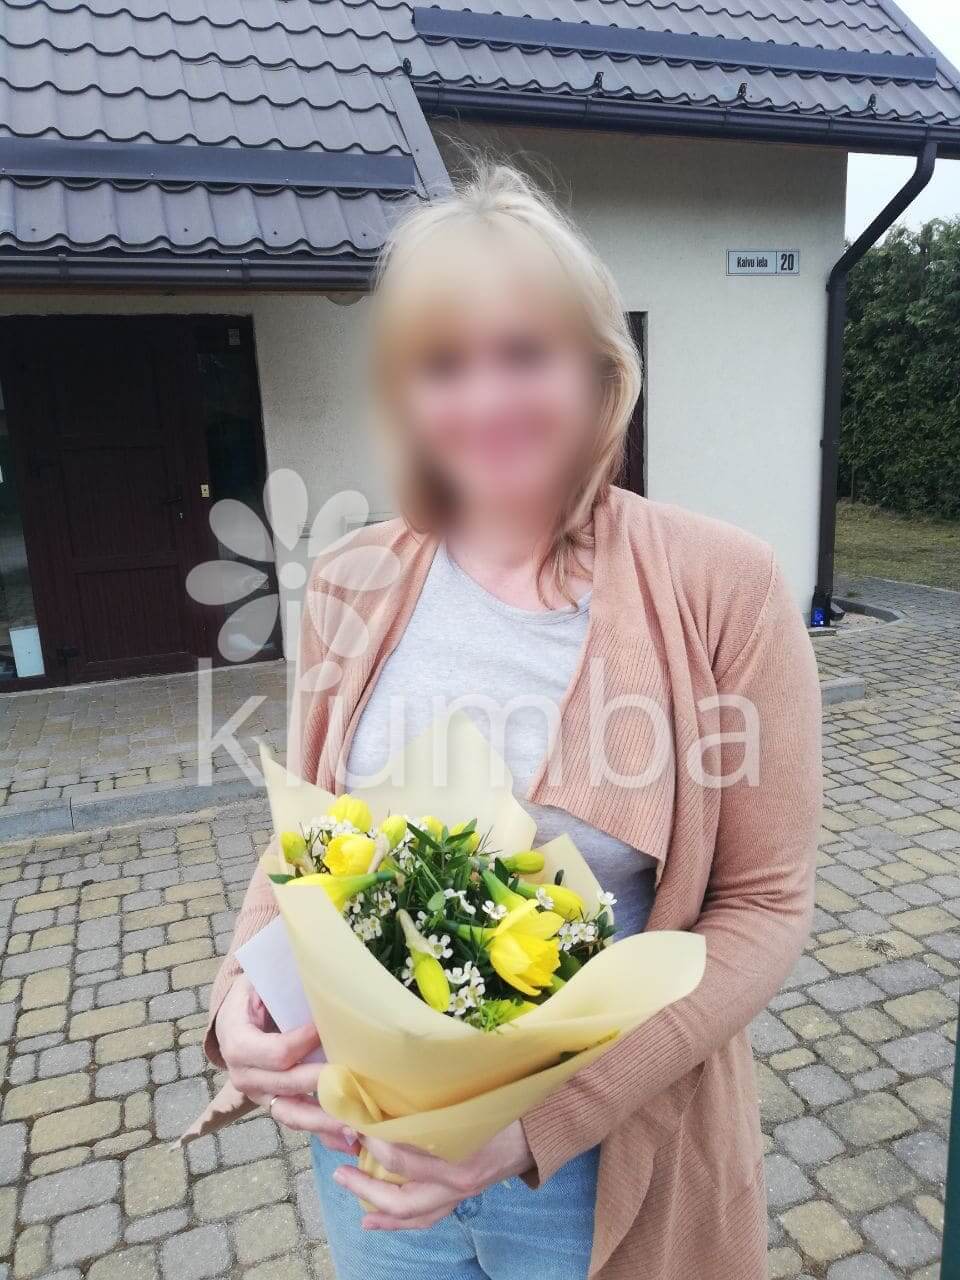 Deliver flowers to Katlakalns (daffodil)